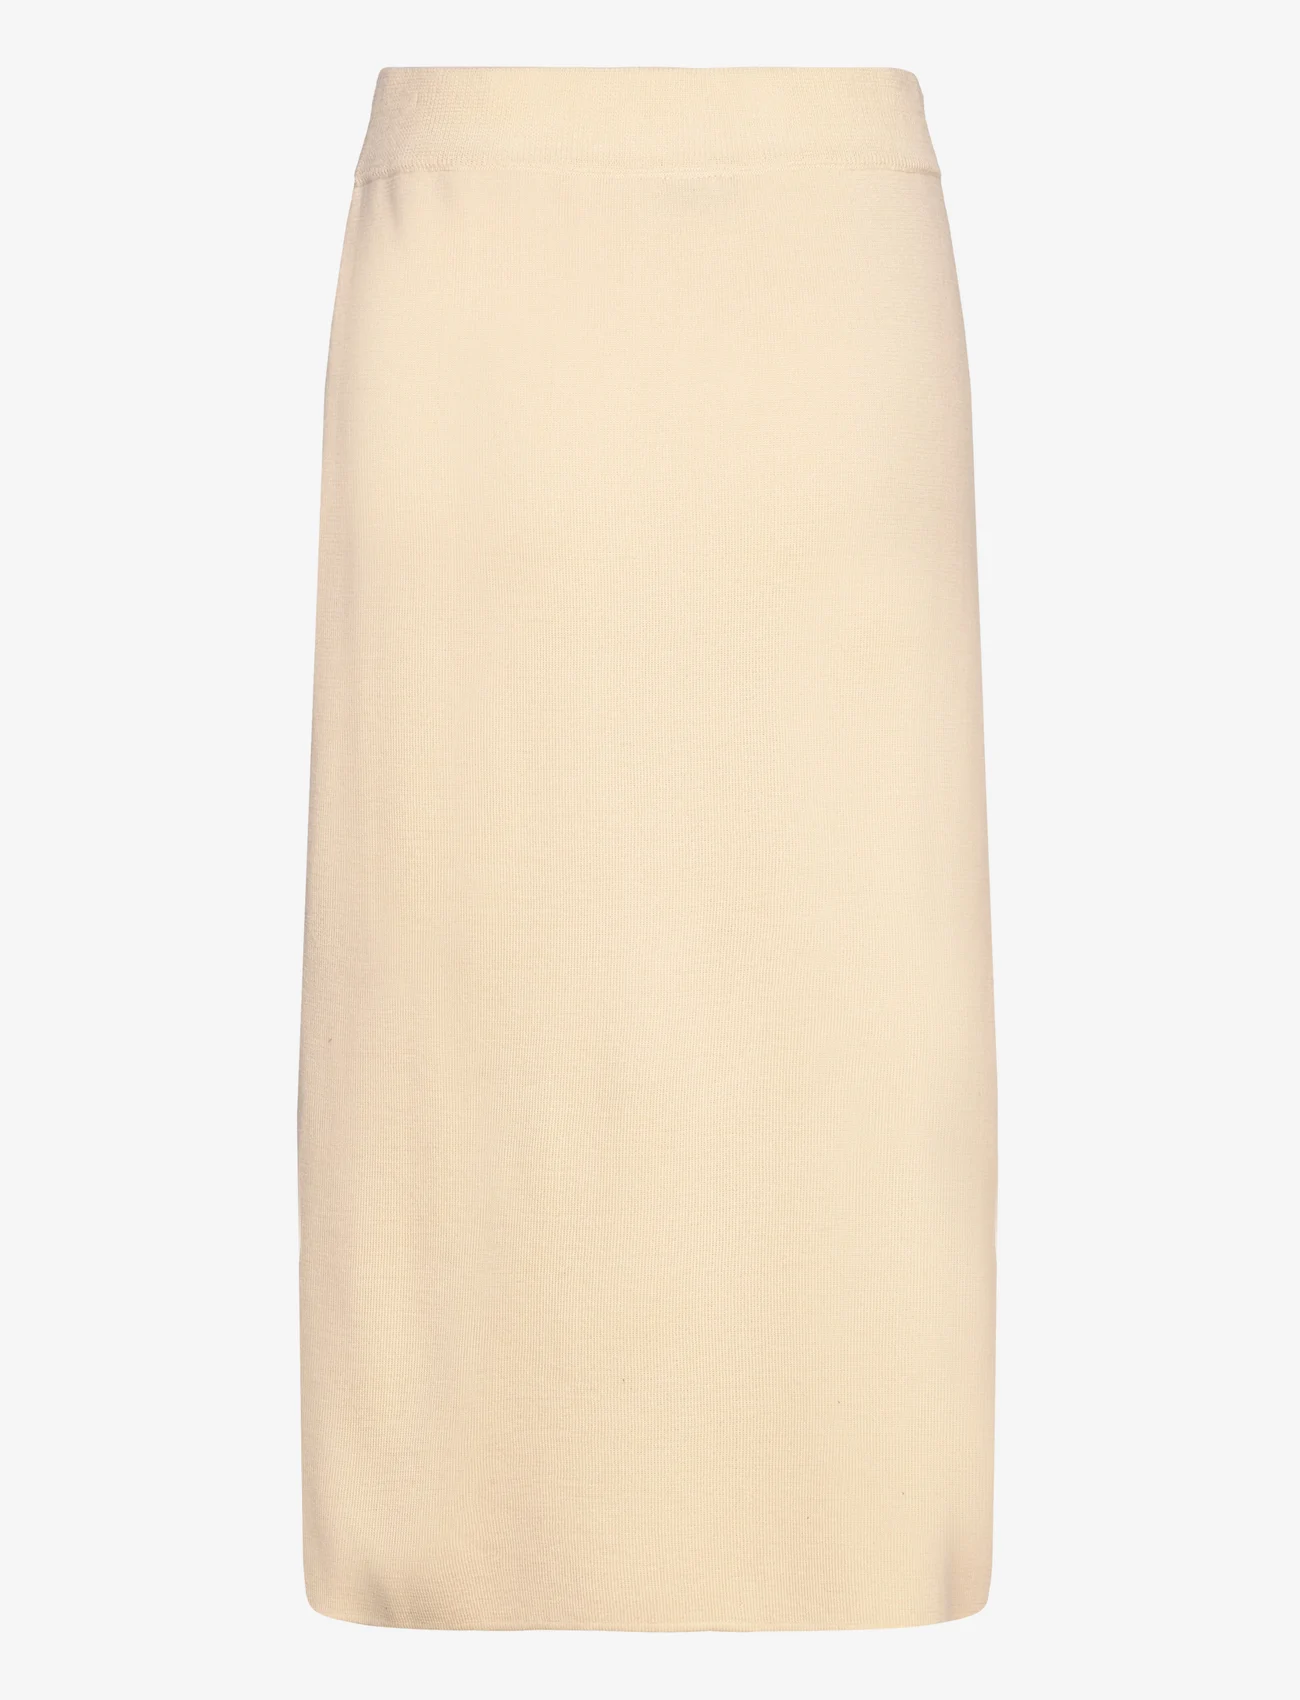 Balmuir - Macy long skirt - knitted skirts - almond - 1